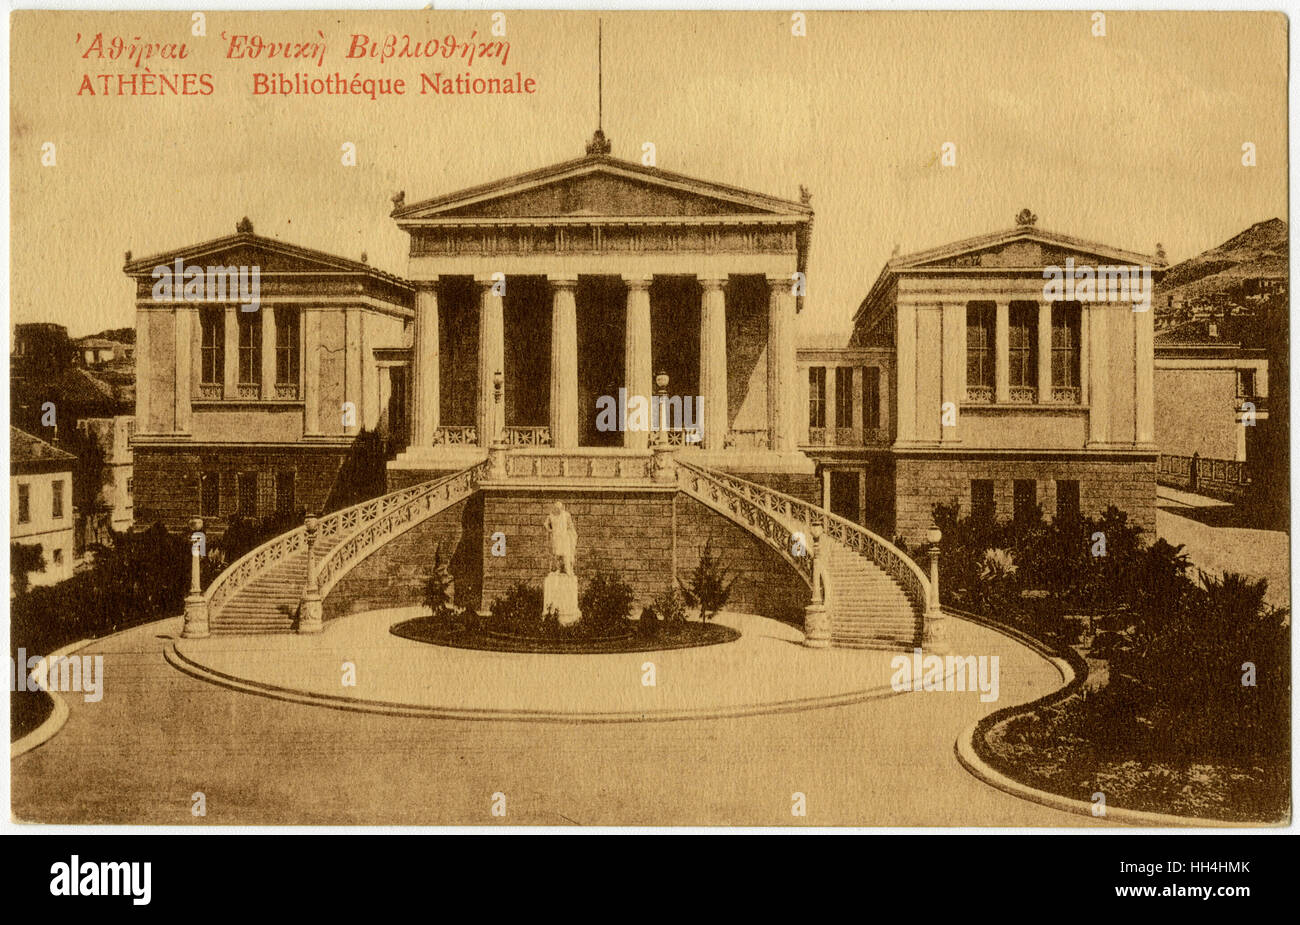 La Biblioteca Nazionale, Atene, Grecia Foto Stock